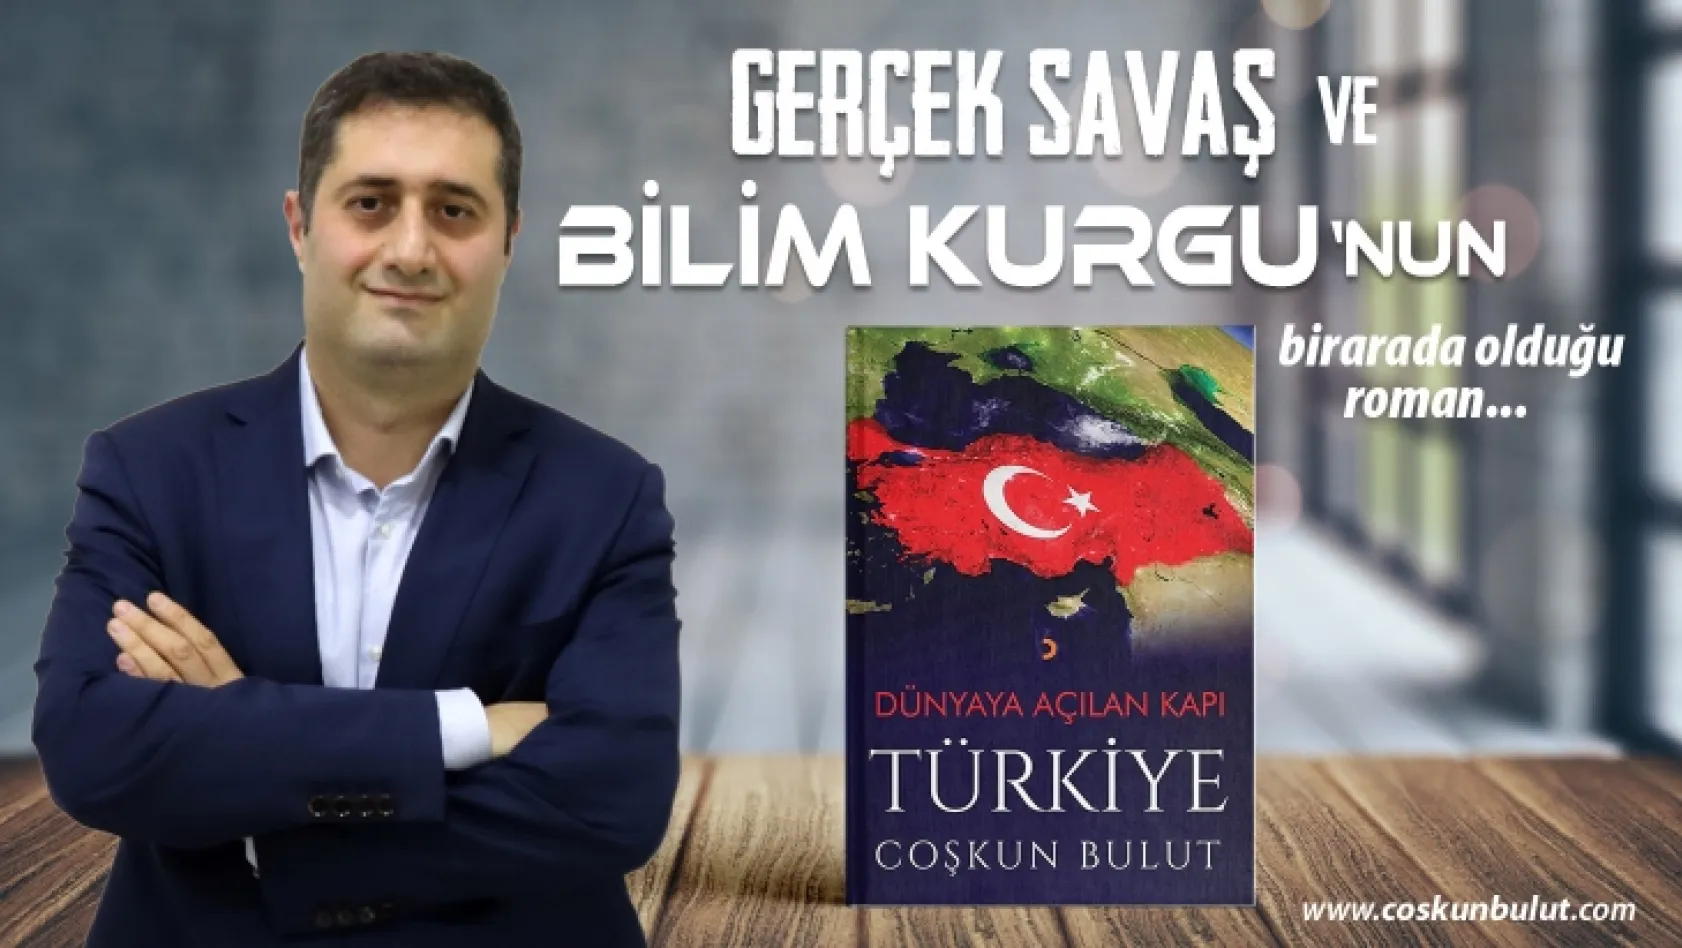 Yazar Coşkun Bulut - Dünyaya Açılan Kapı Türkiye